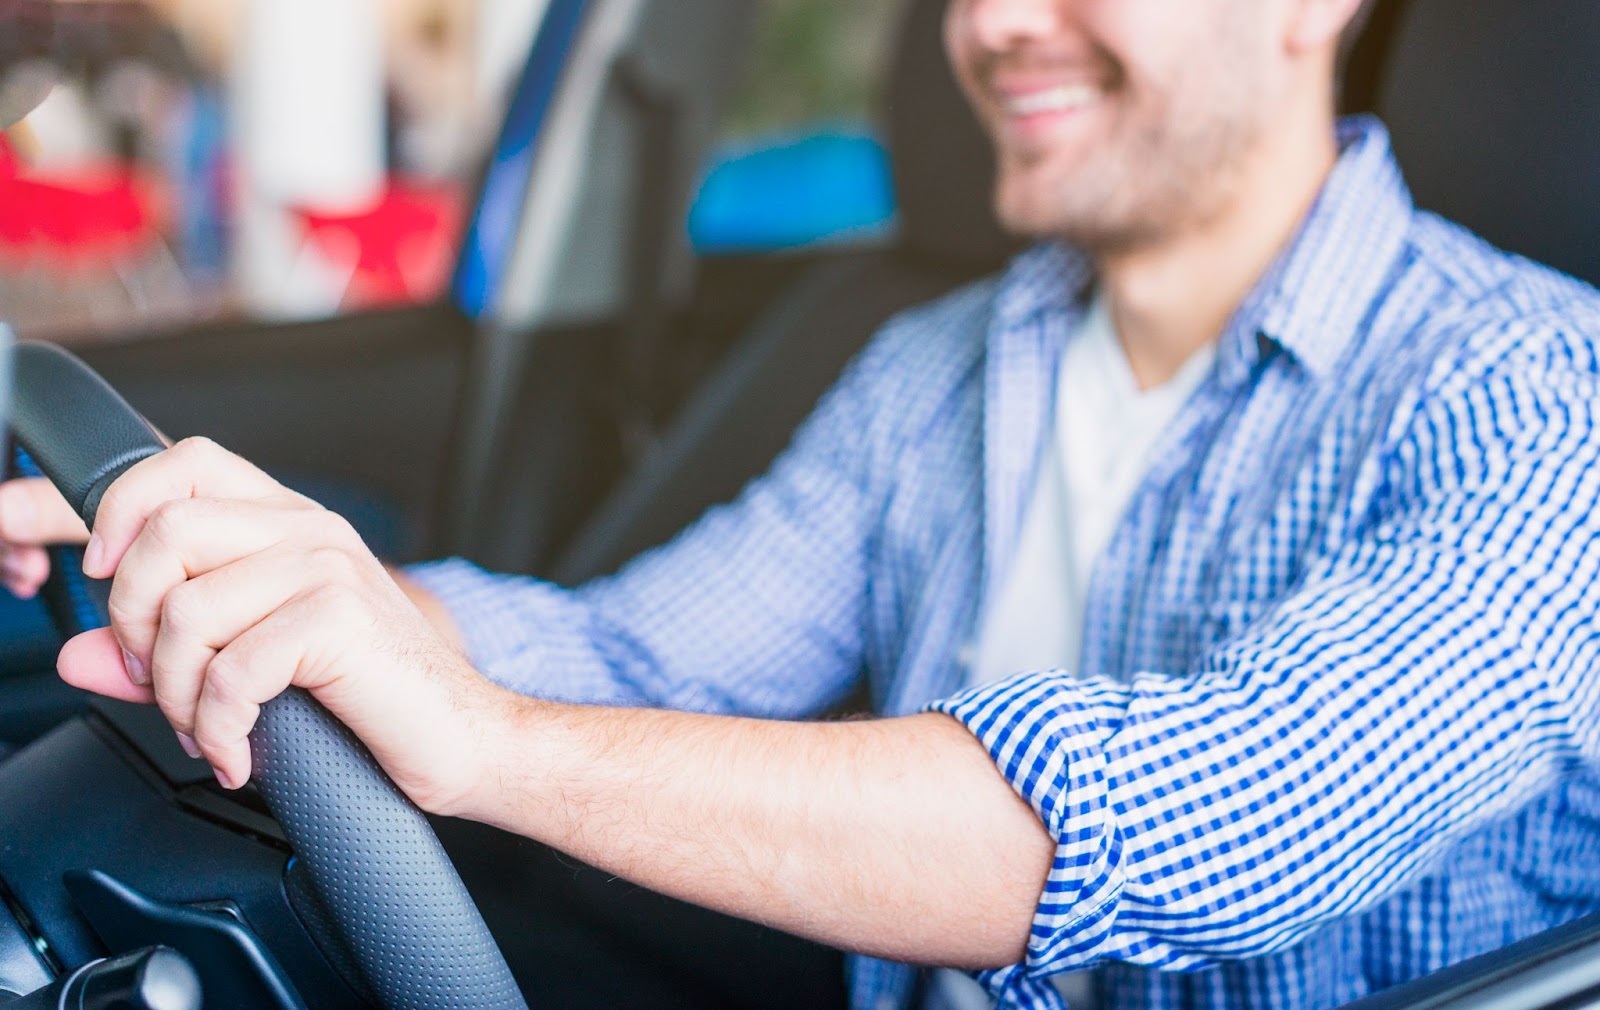 Homem motorista vestindo camisa xadrez azul está contente enquanto apoia as duas mãos no volante visando sua segurança no trânsito.